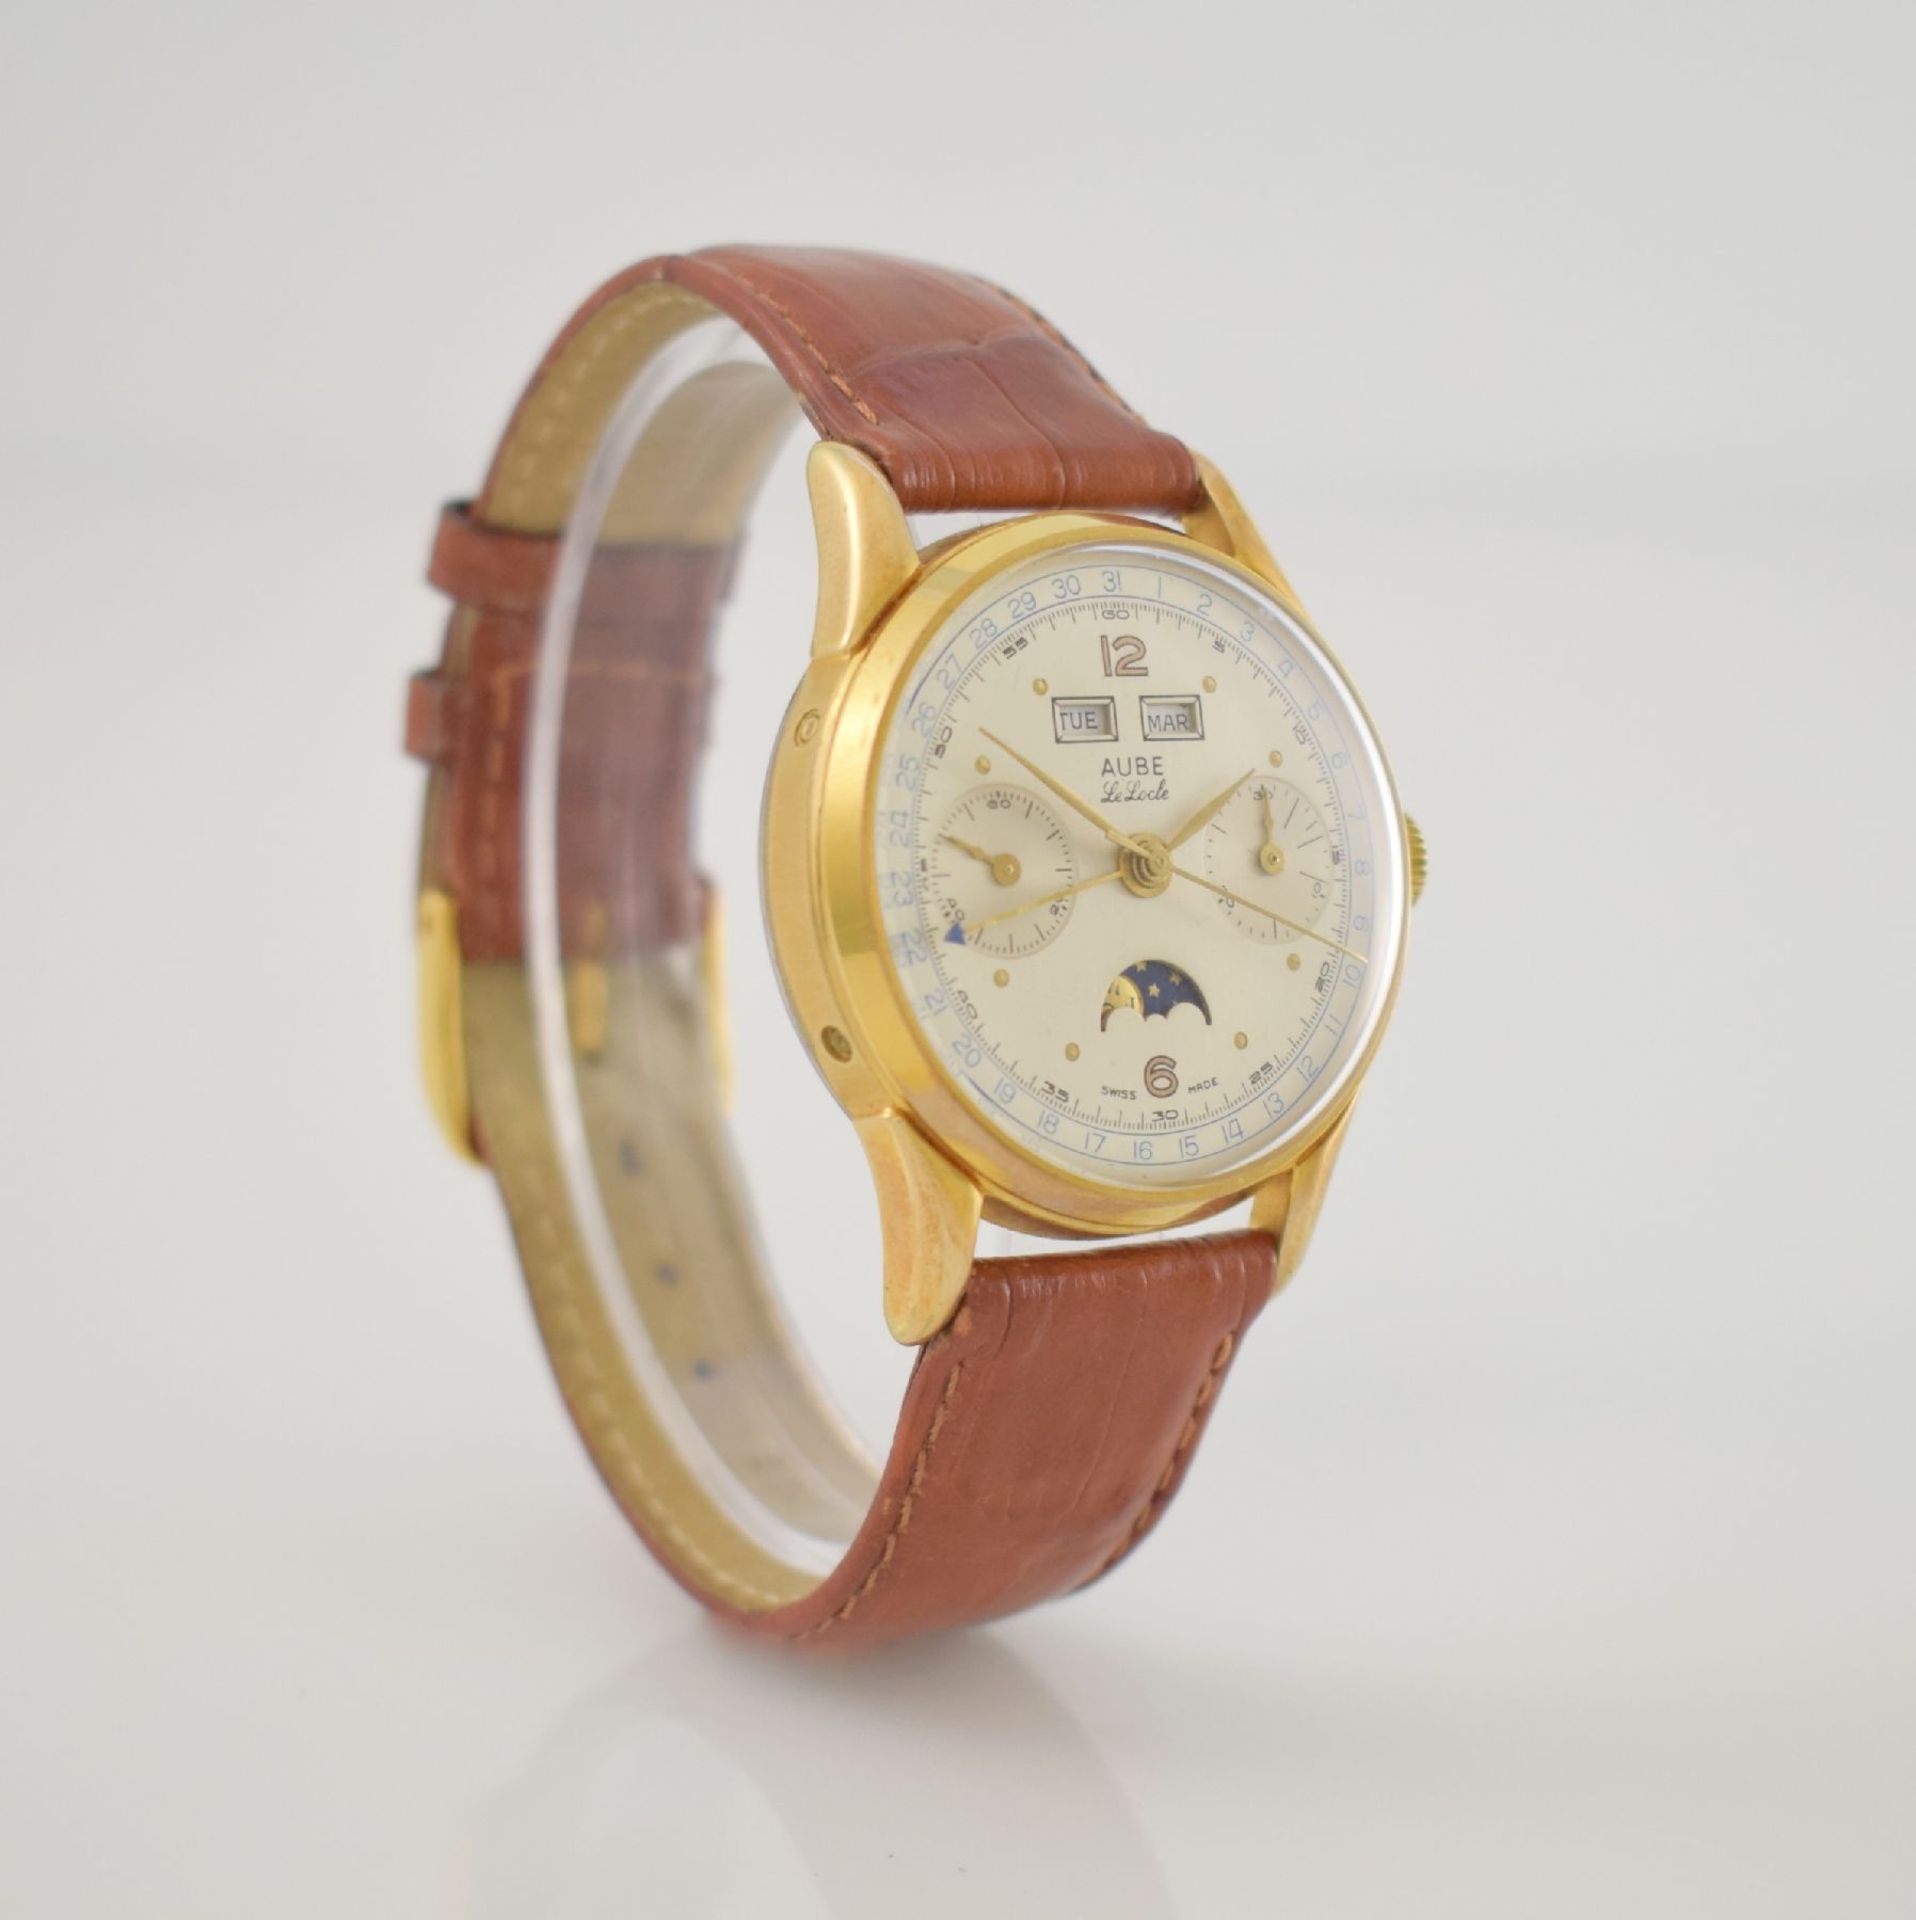 AUBE Schaltradchronograph mit Vollkalender Kaliber Venus 195, Schweiz um 1950, Handaufzug, verg. - Bild 4 aus 7